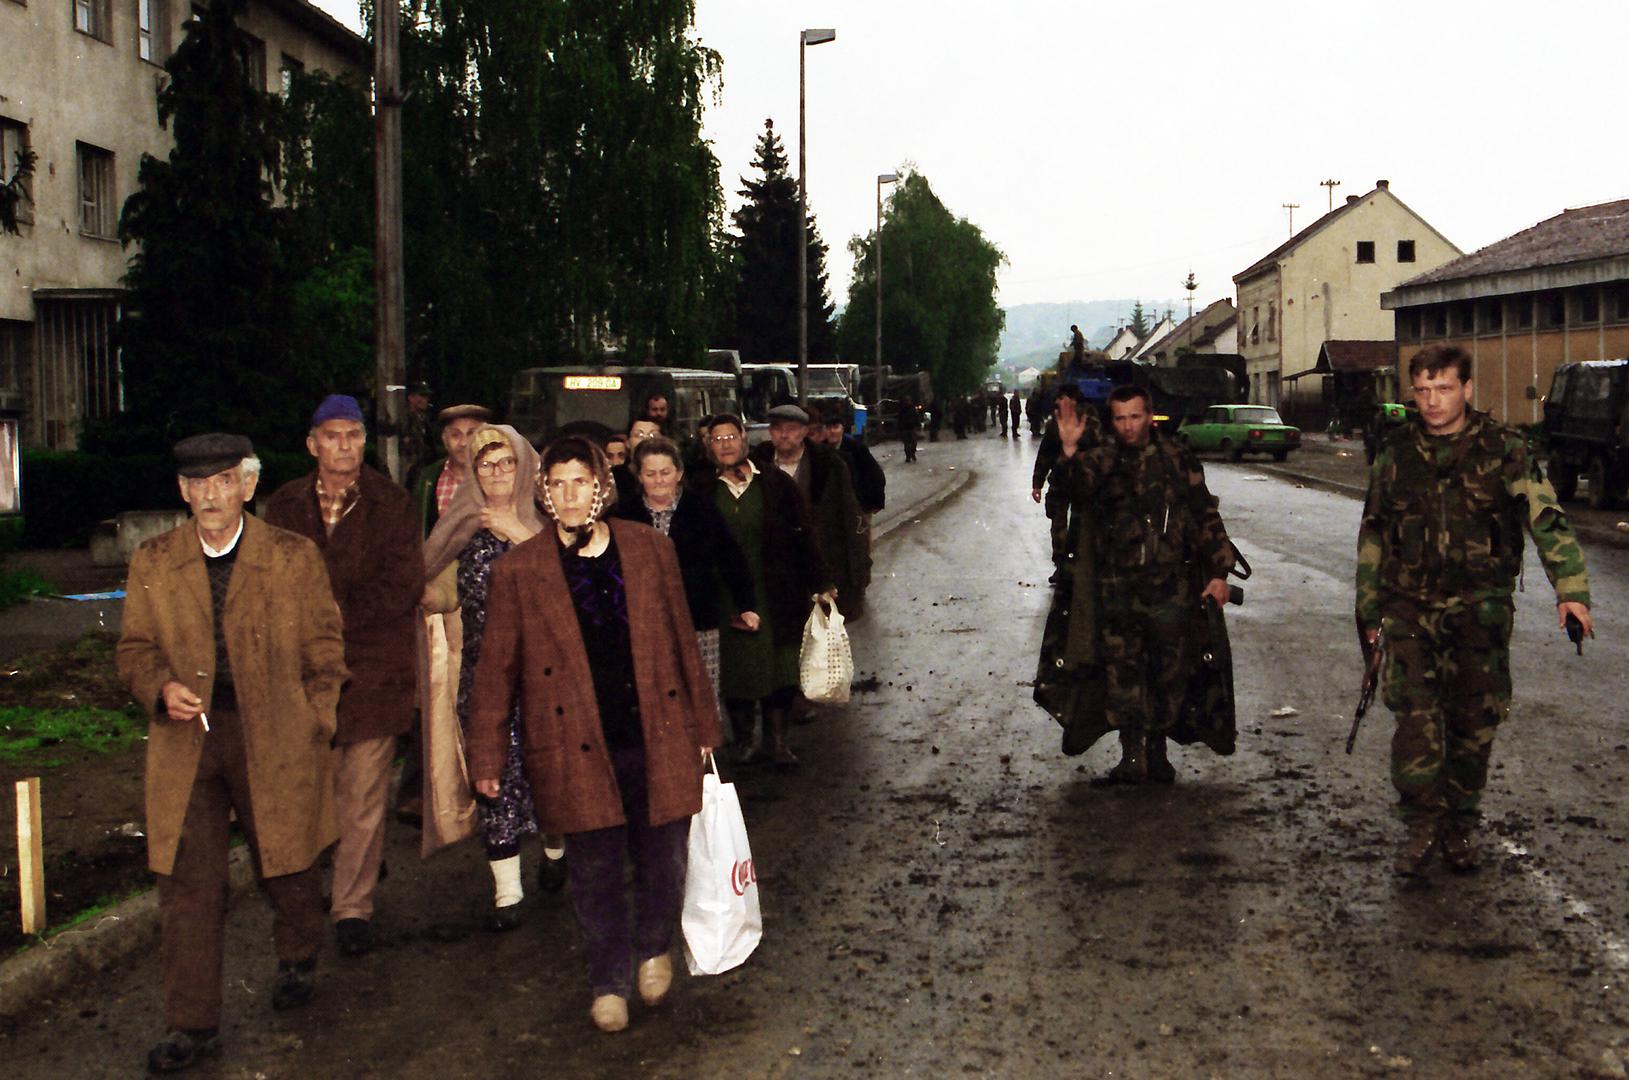 02.05.1995., Okucani - Vojno redarstvena akcija Bljesak kojom je Hrvatska vojska krenula u oslobadjanje okupiranih dijelova zapadne Slavonije. Hrvatska vojska usla je u Okucane i okupila srpsko civilno stanovnistvo.rPhoto: Davor Visnjic/PIXSELL